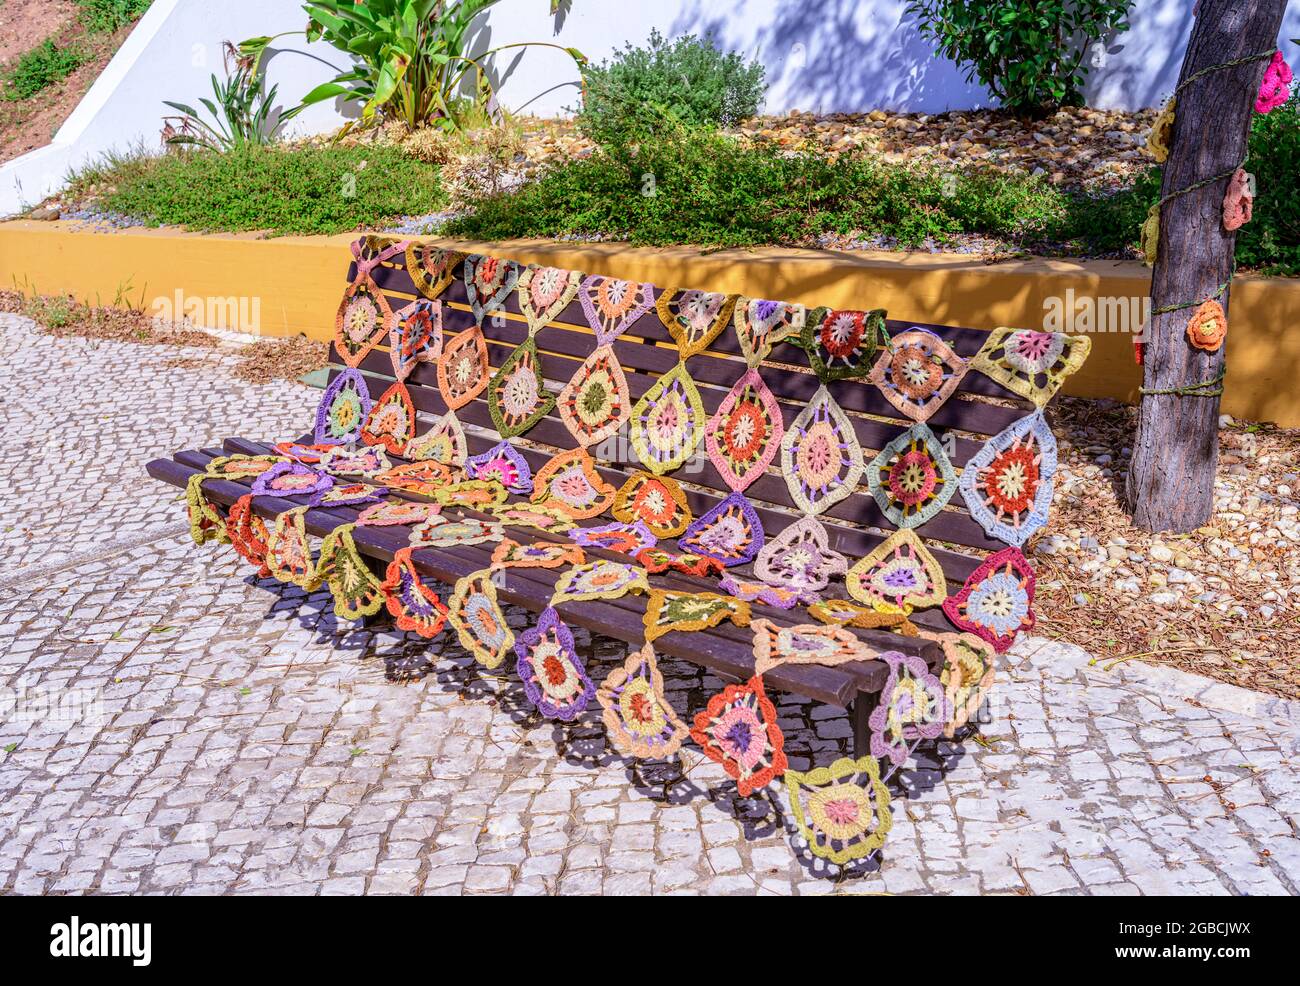 Housse de banquette en crochet placée sur une banquette publique São Bartolomeu do sul est de l'Algarve Portugal Banque D'Images